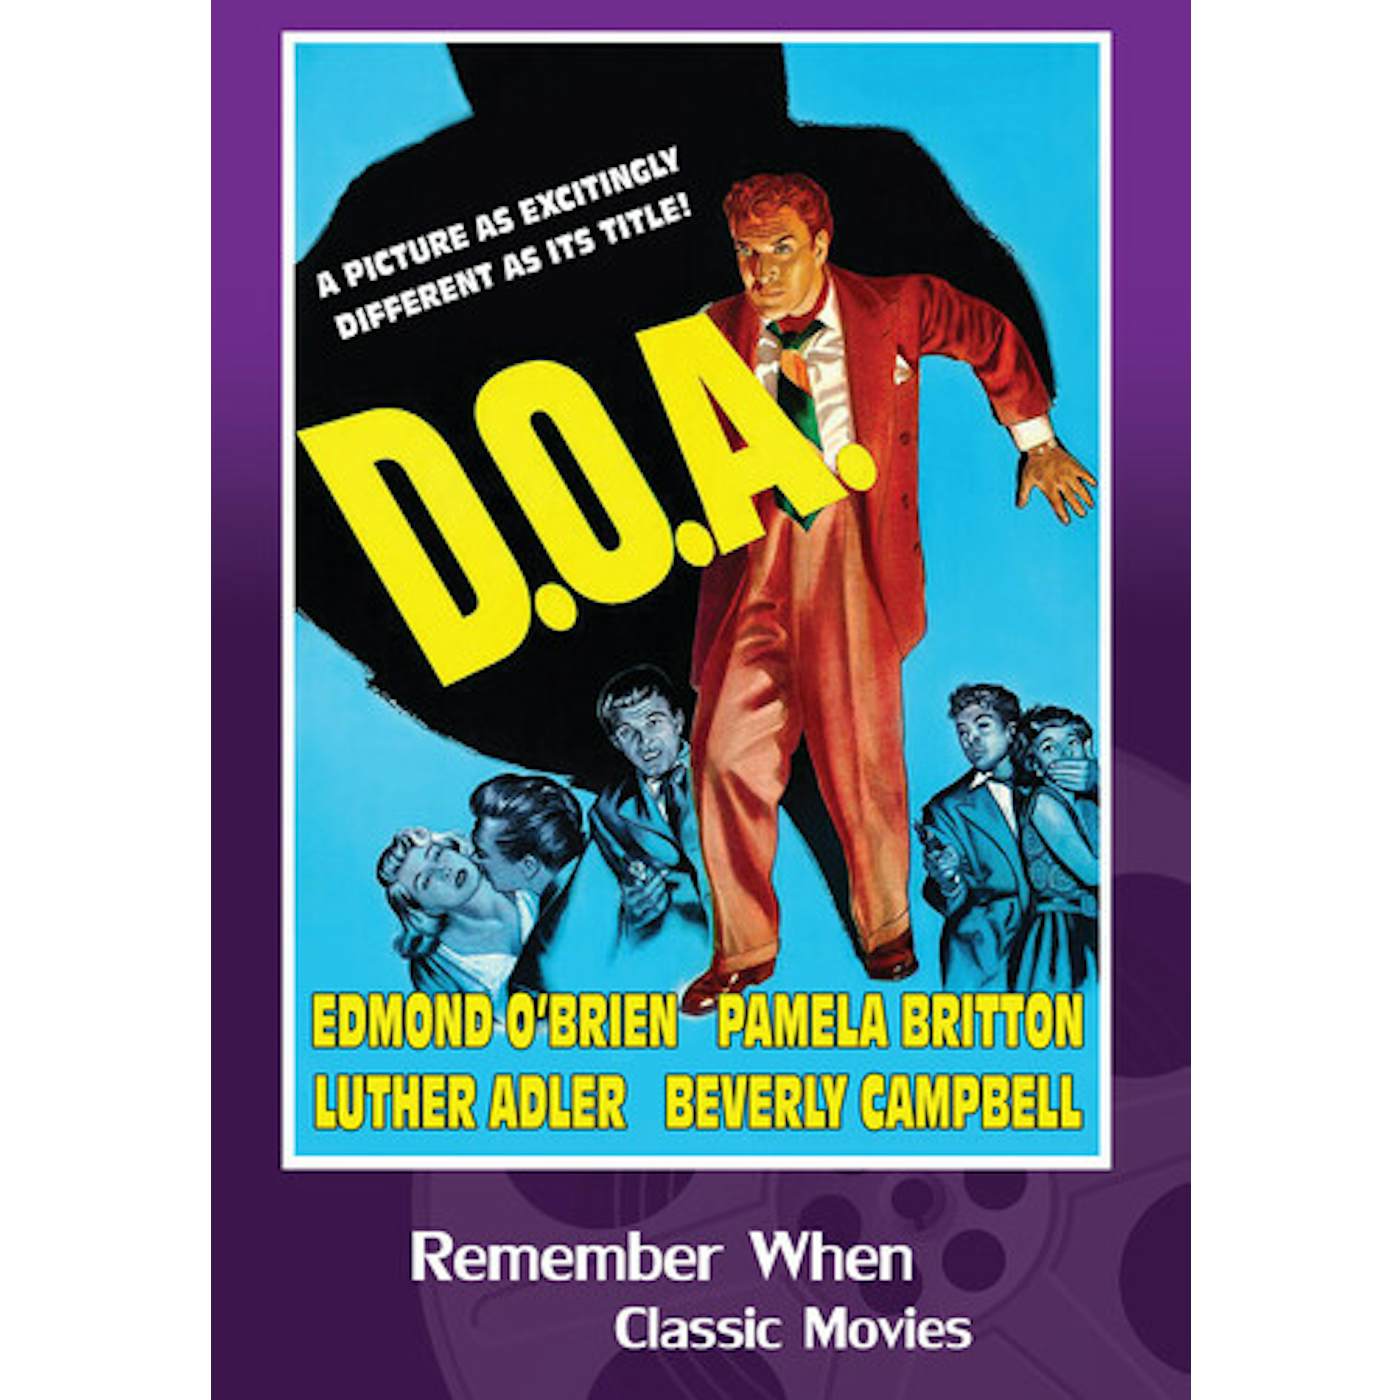 D.O.A. DVD